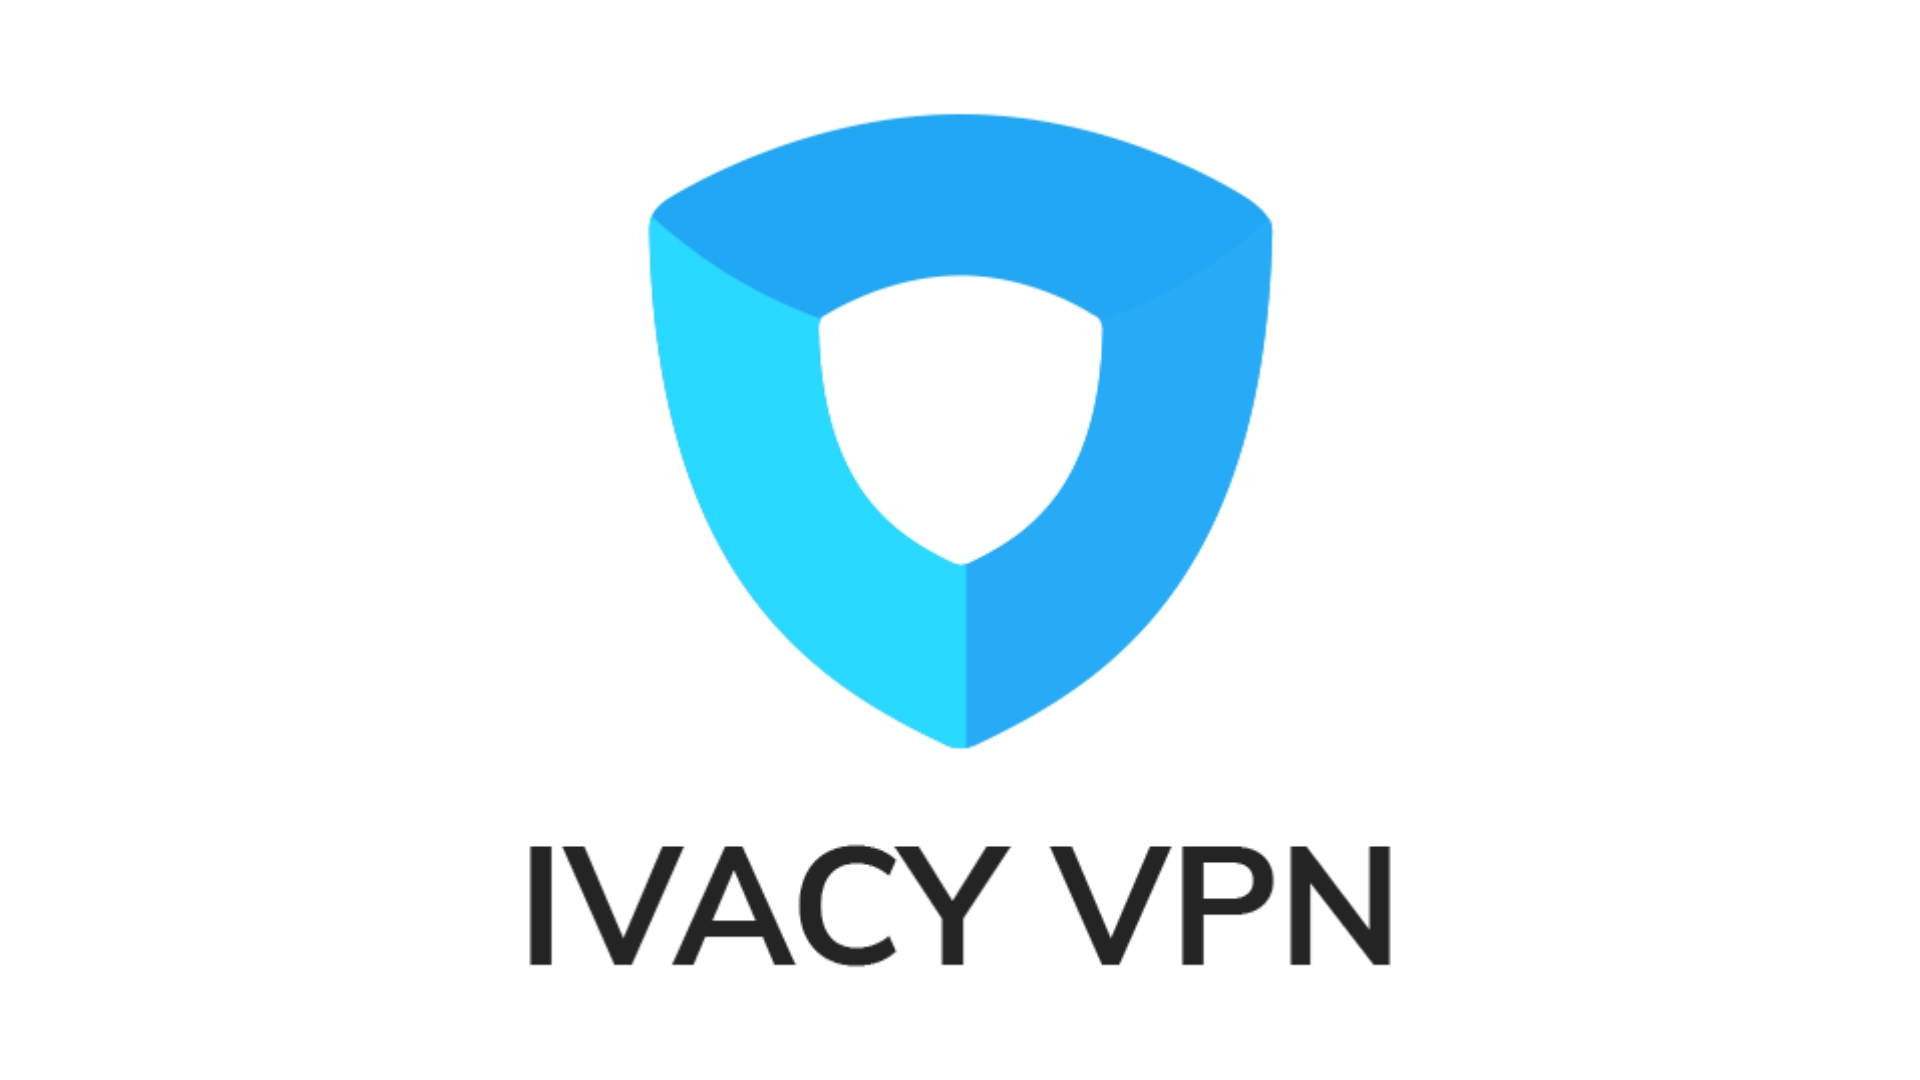 Best Hulu VPN: Ivacy VPN. Image shows the company logo.